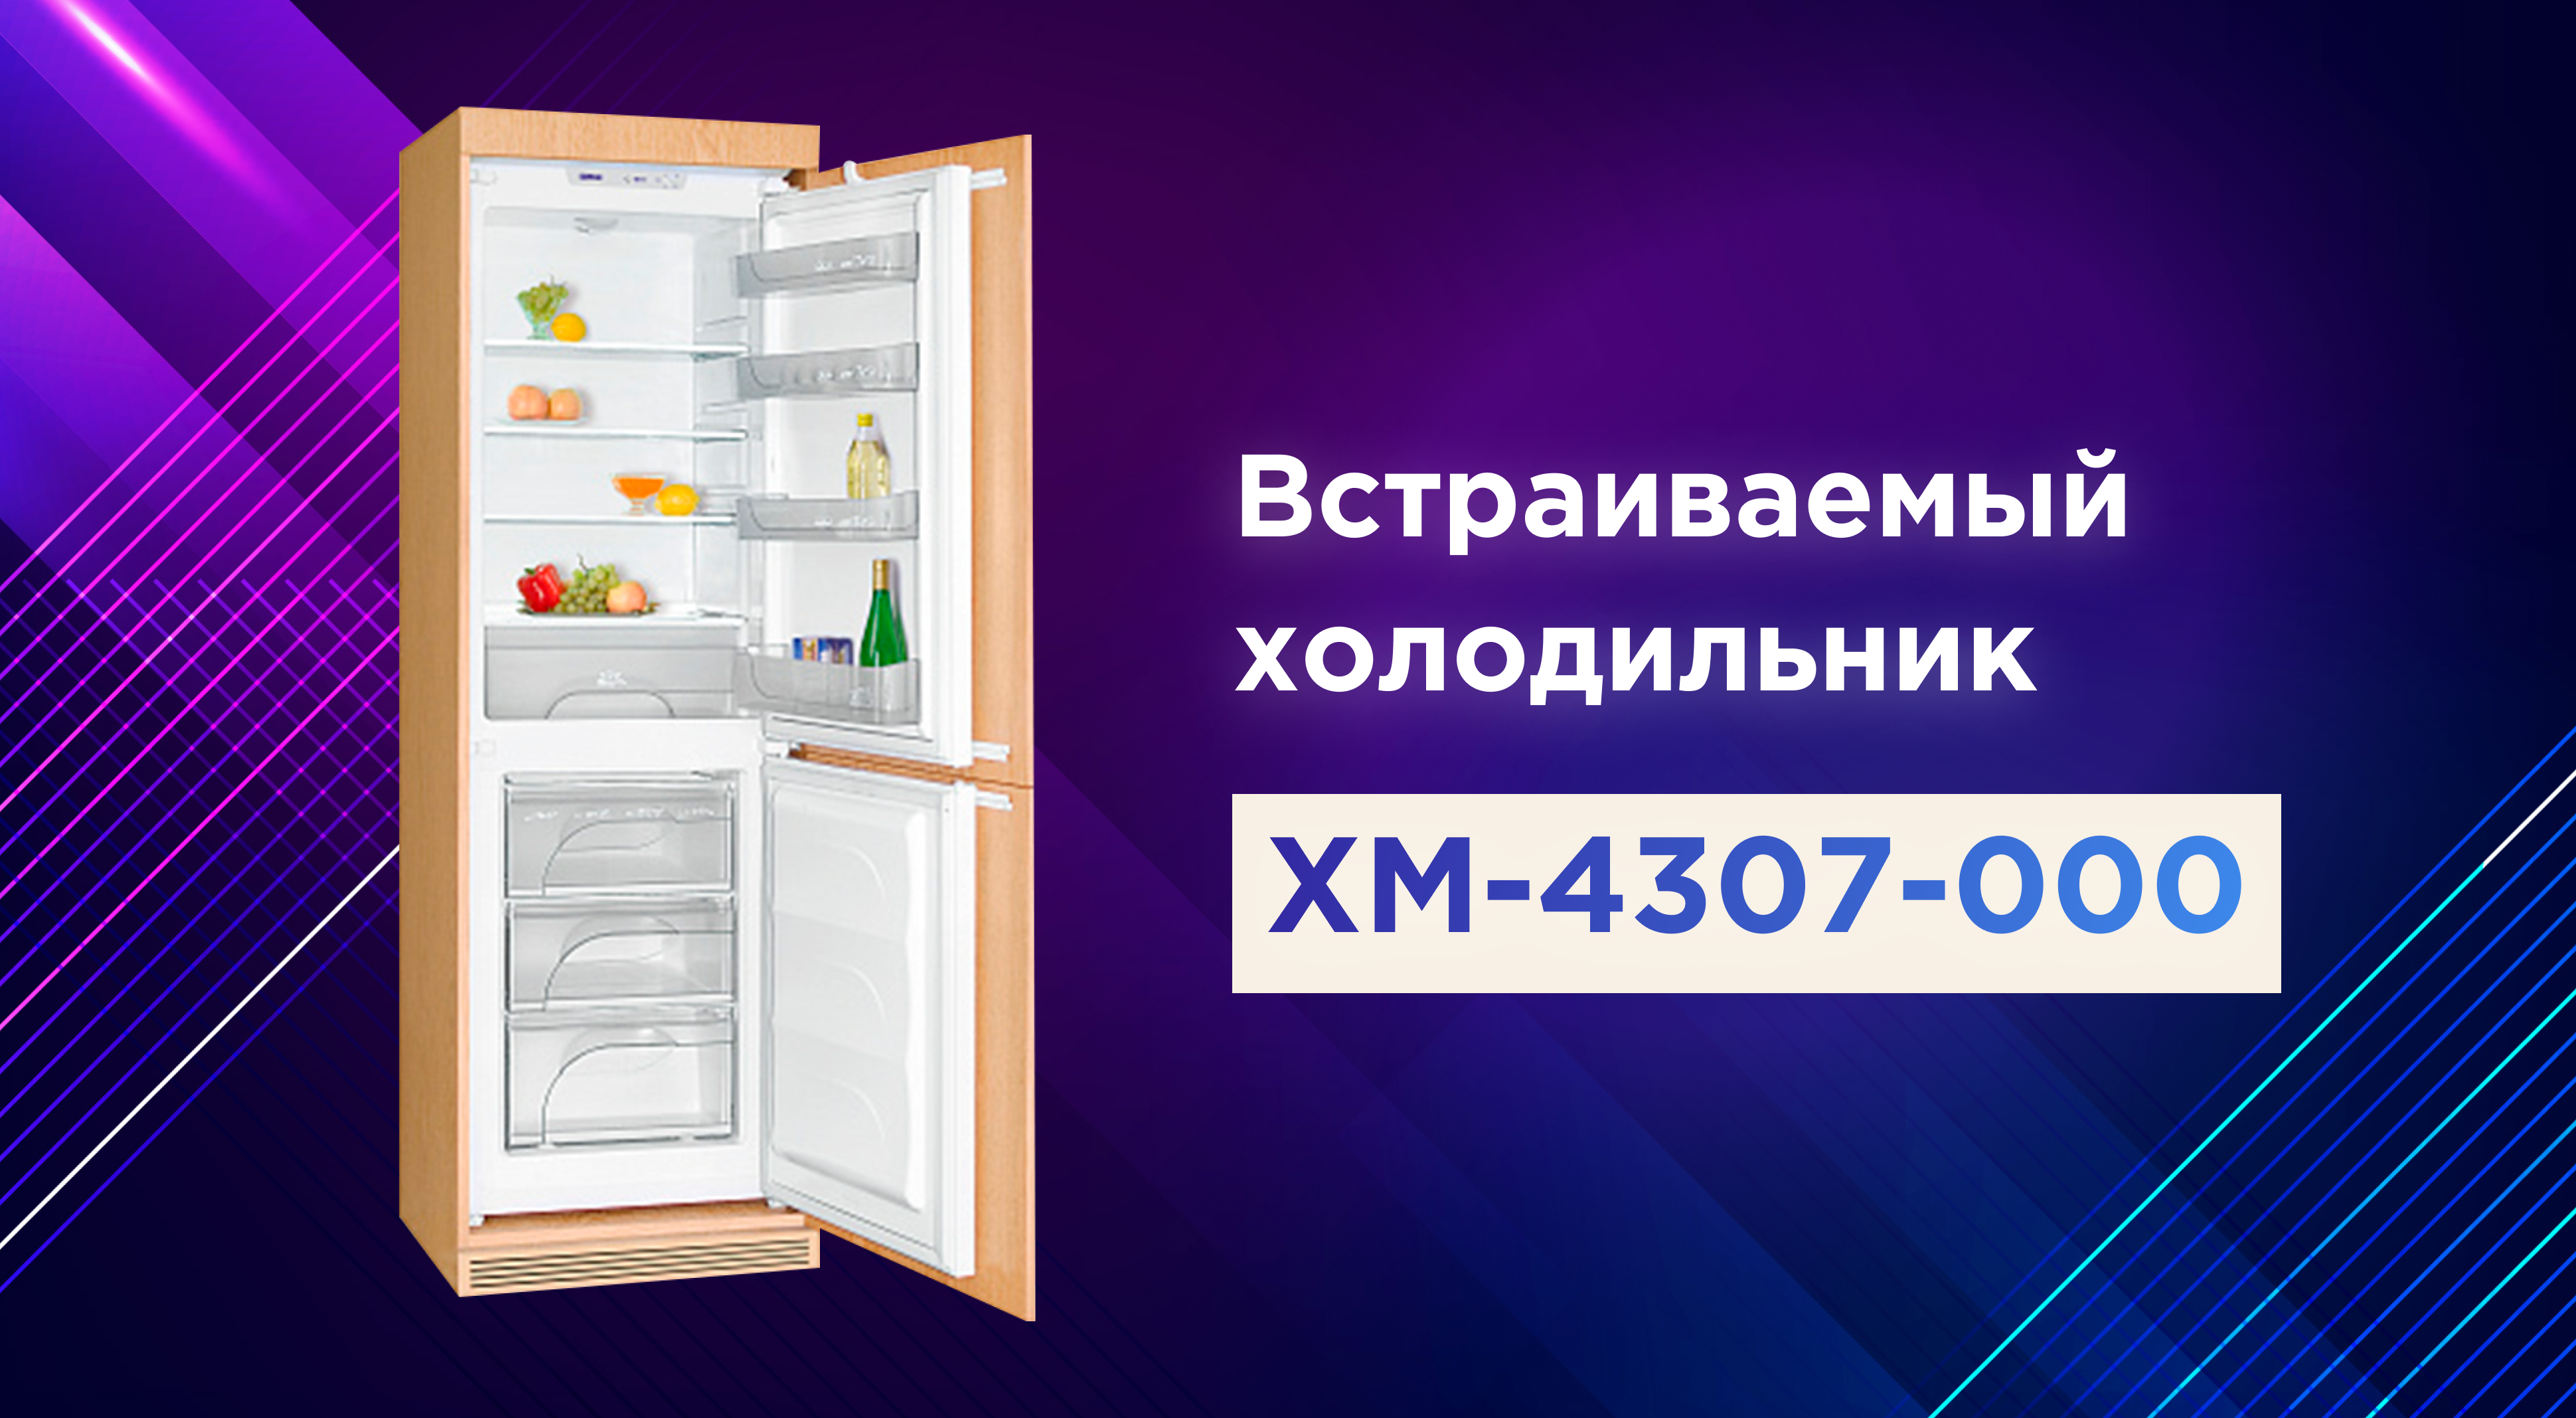 Размеры встраиваемых холодильников